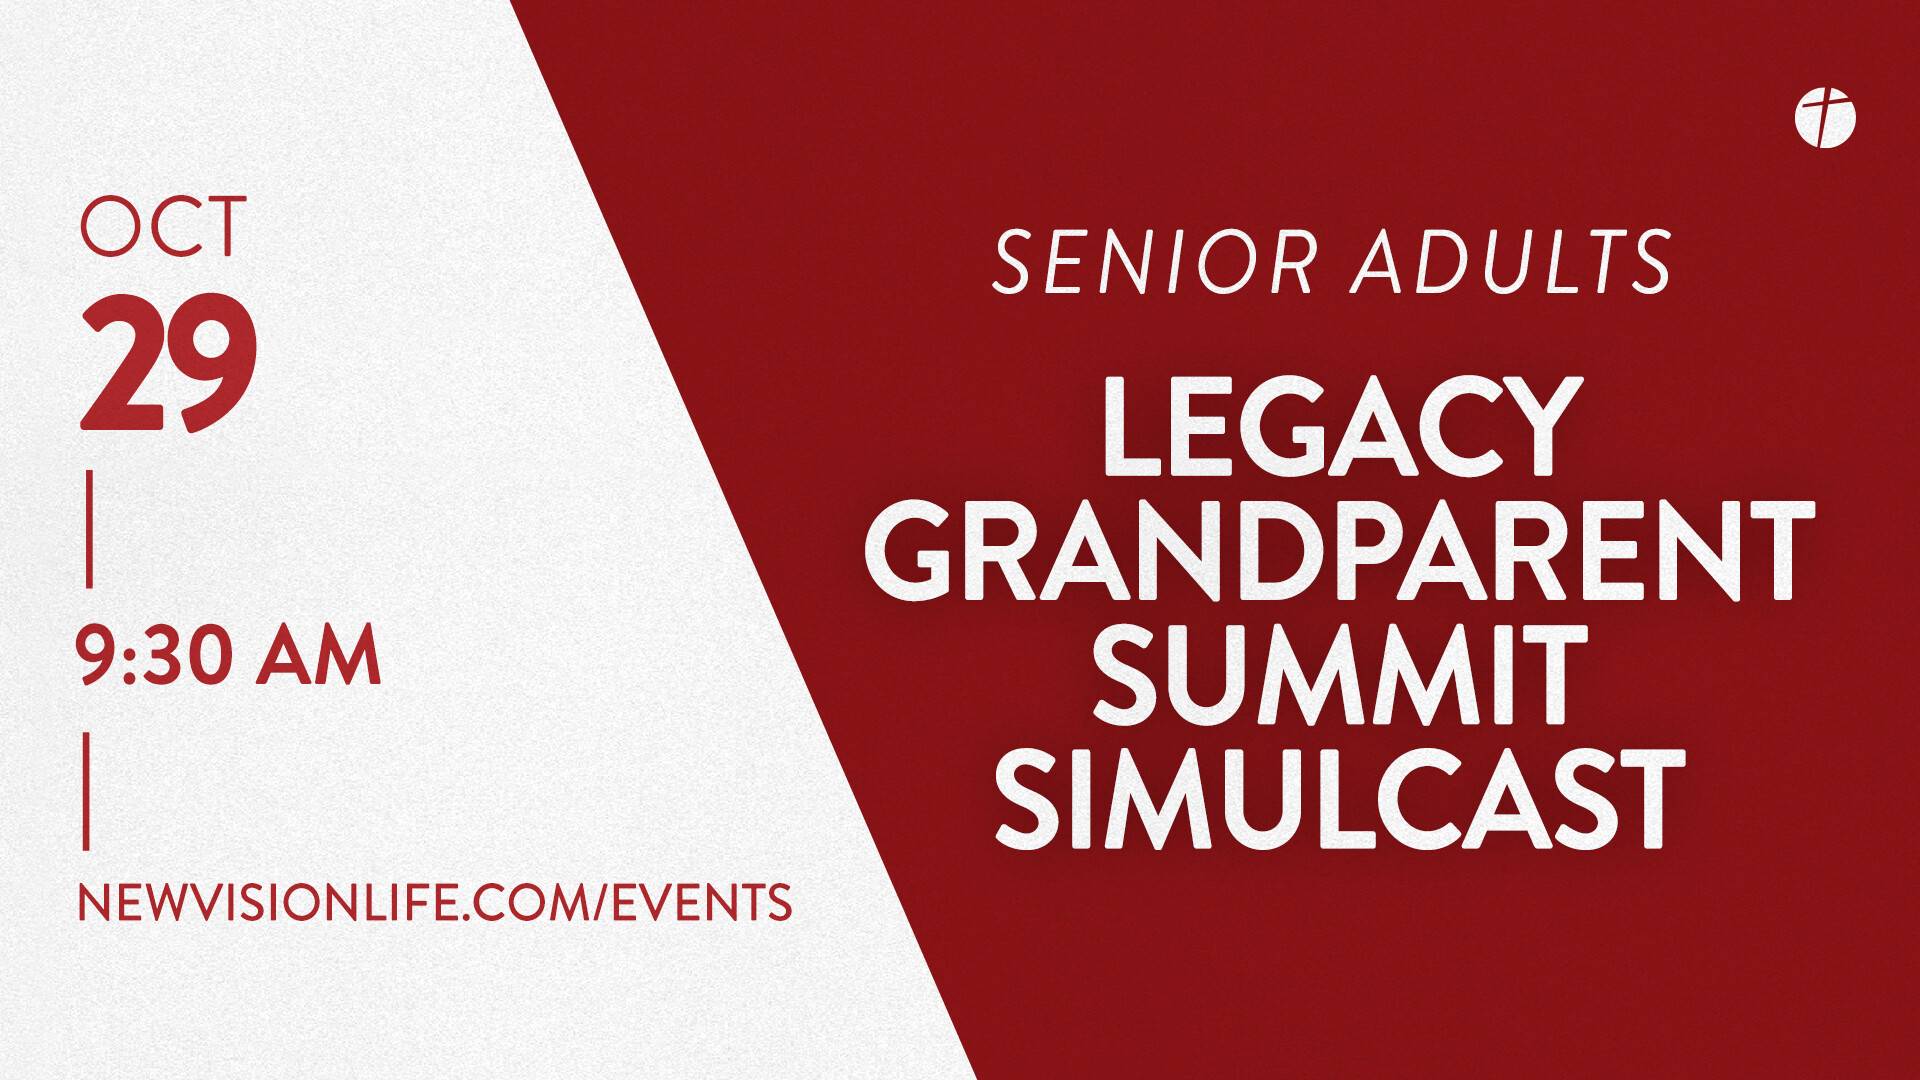 Legacy Grandparent Summit Simulcast